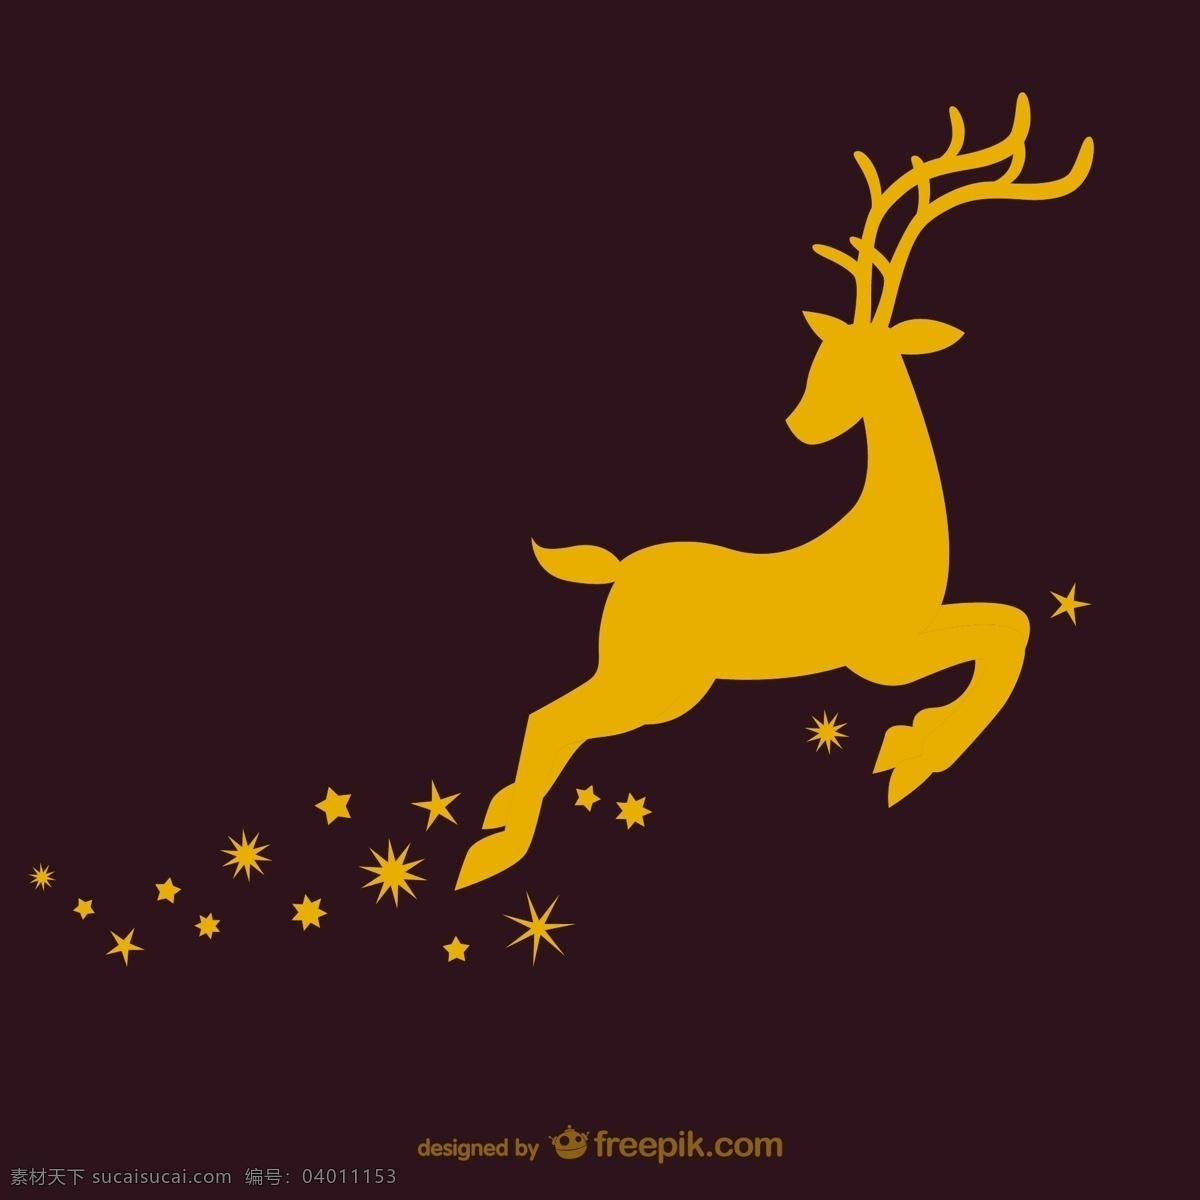 奔腾 鹿 圣诞 金鹿 节日素材 圣诞节